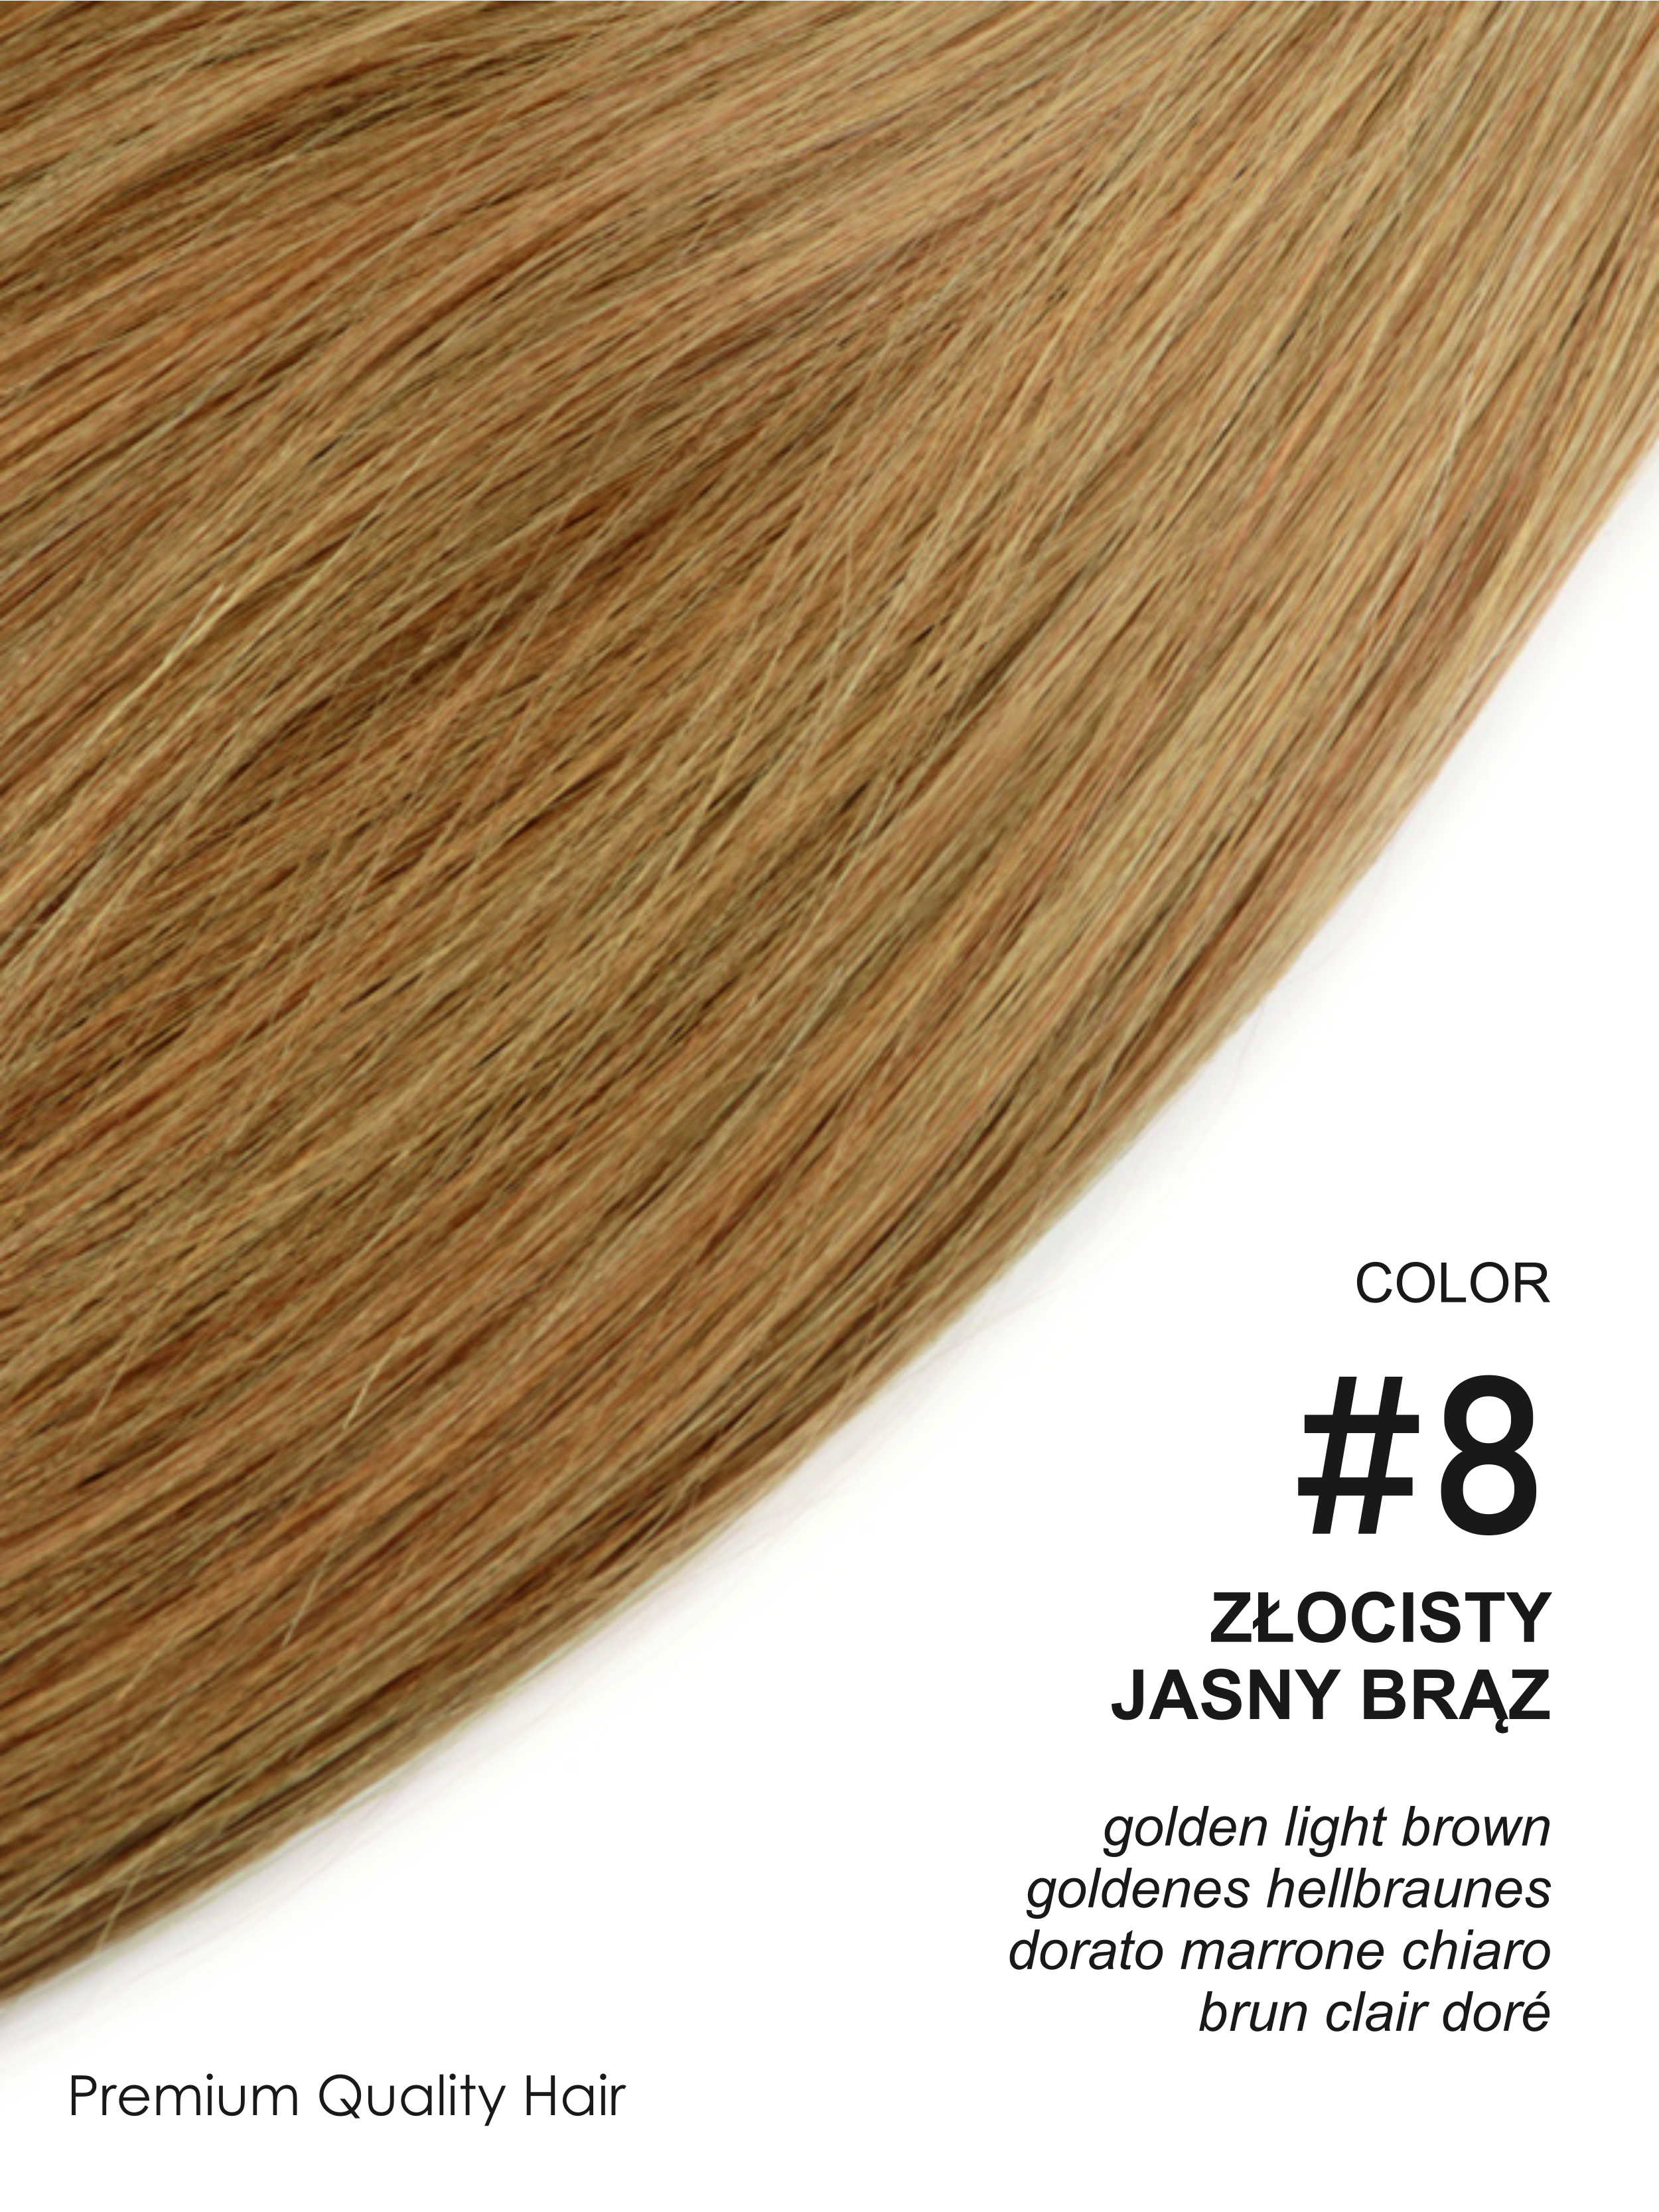 Beauty for You Slovanské vlasy - štandardné pásky 4 cm, vlasy 45 cm, pre sendvičovú metódu